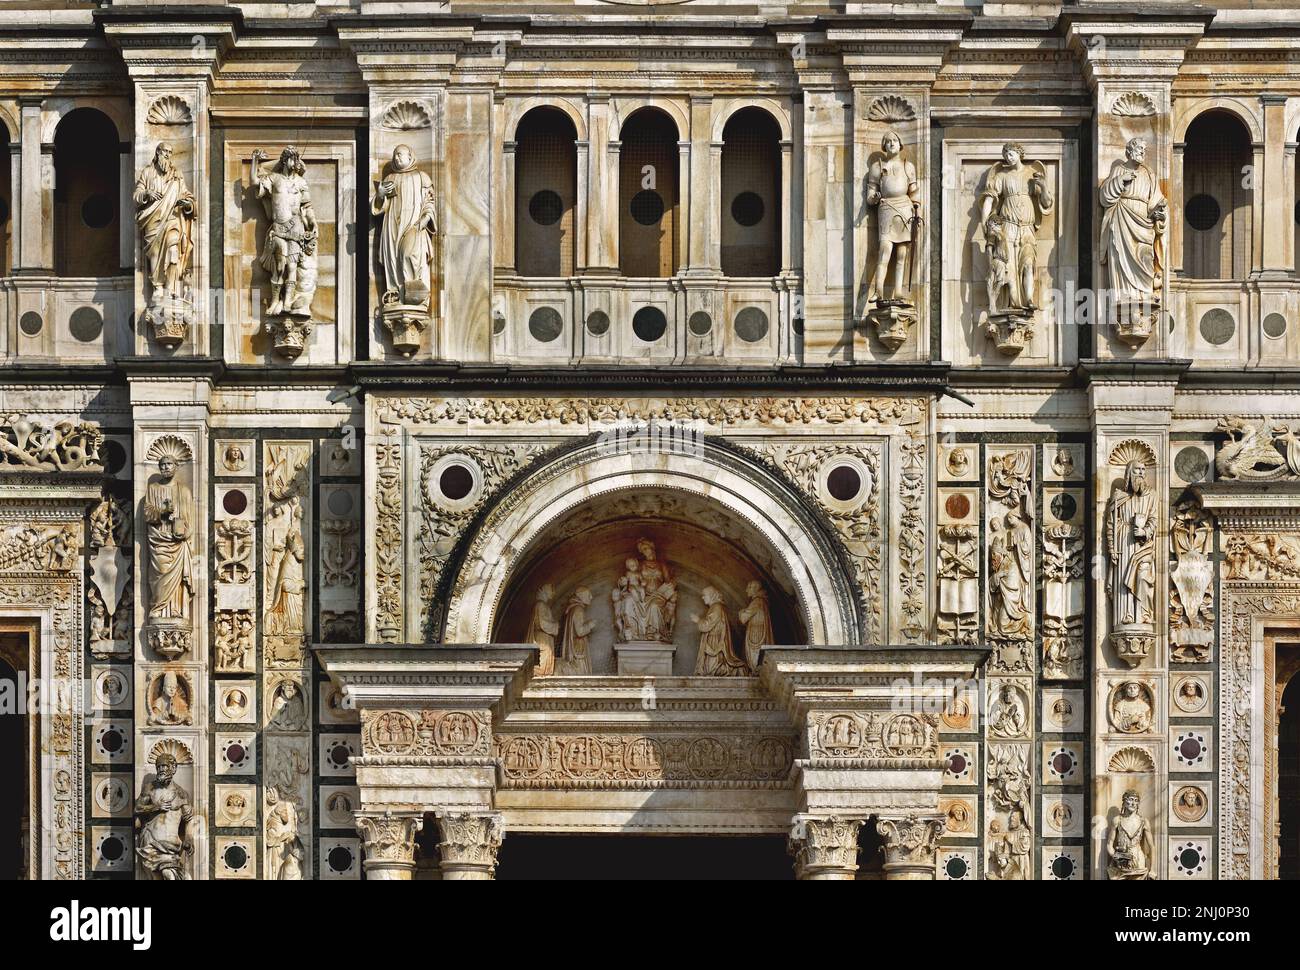 Certosa di Pavia 1396–1495 Kloster und Komplex in der Lombardei, Pavia, Italien, Italienisch. (Klosterorden, Karthusianer, gegründet von St. Bruno, 1044 in Grande Chartreuse, die Karthusianer sind bekannt für ihre Abgeschiedenheit und Aszetismus, die Schlichtheit ihrer Architektur, Certosa-Architektur, Gotik, Renaissance, Mannerismus, Barock, ) Gian Galeazzo Visconti, beauftragte den Architekten Marco Solari, Stockfoto